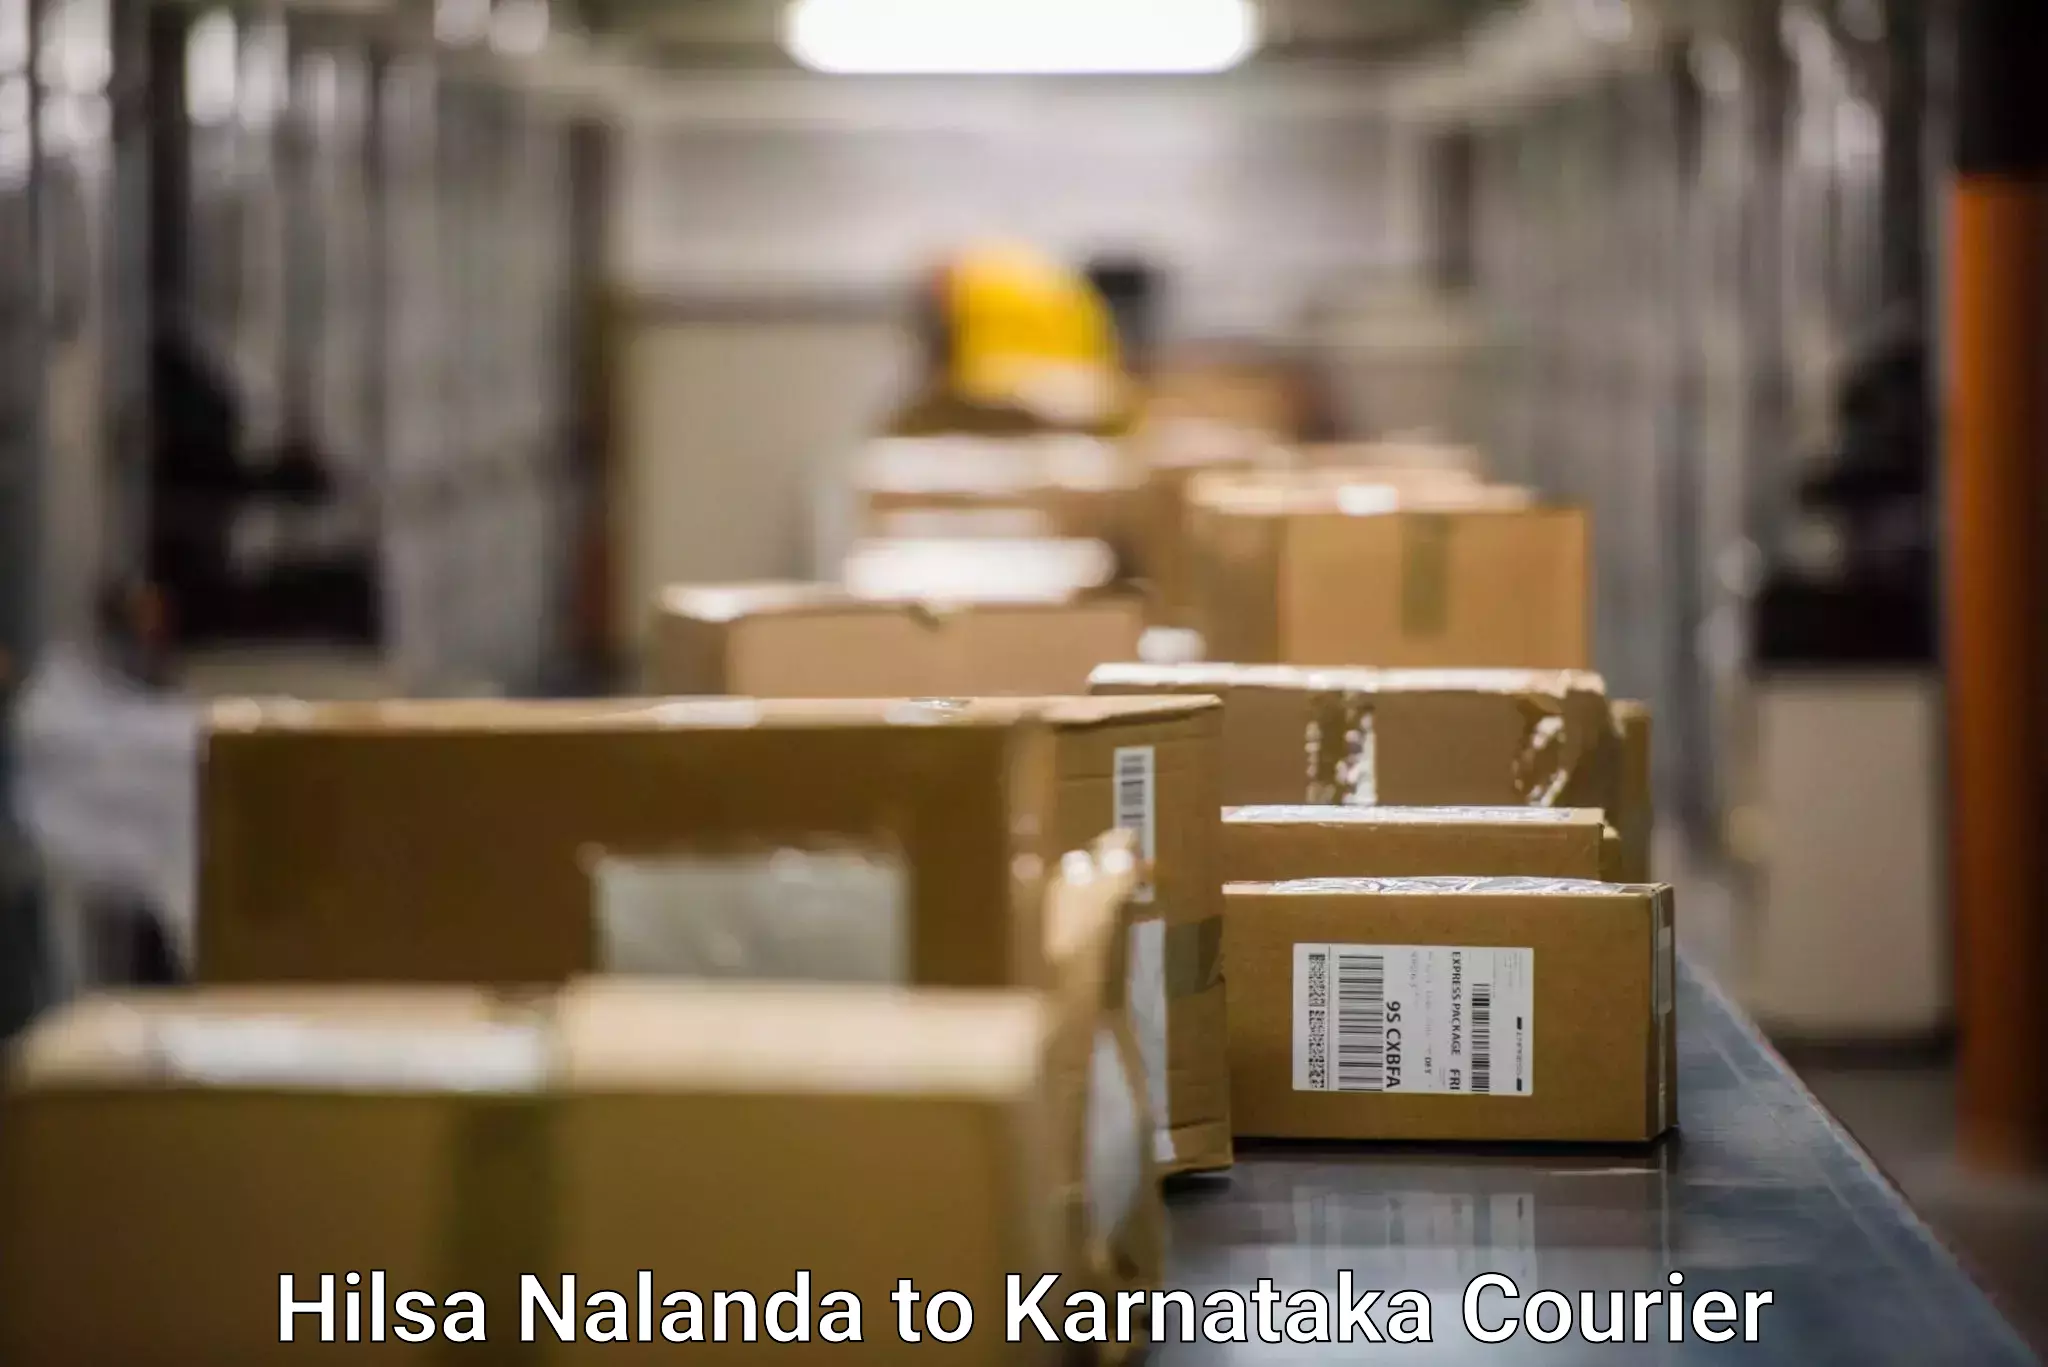 Customized shipping options in Hilsa Nalanda to yedrami